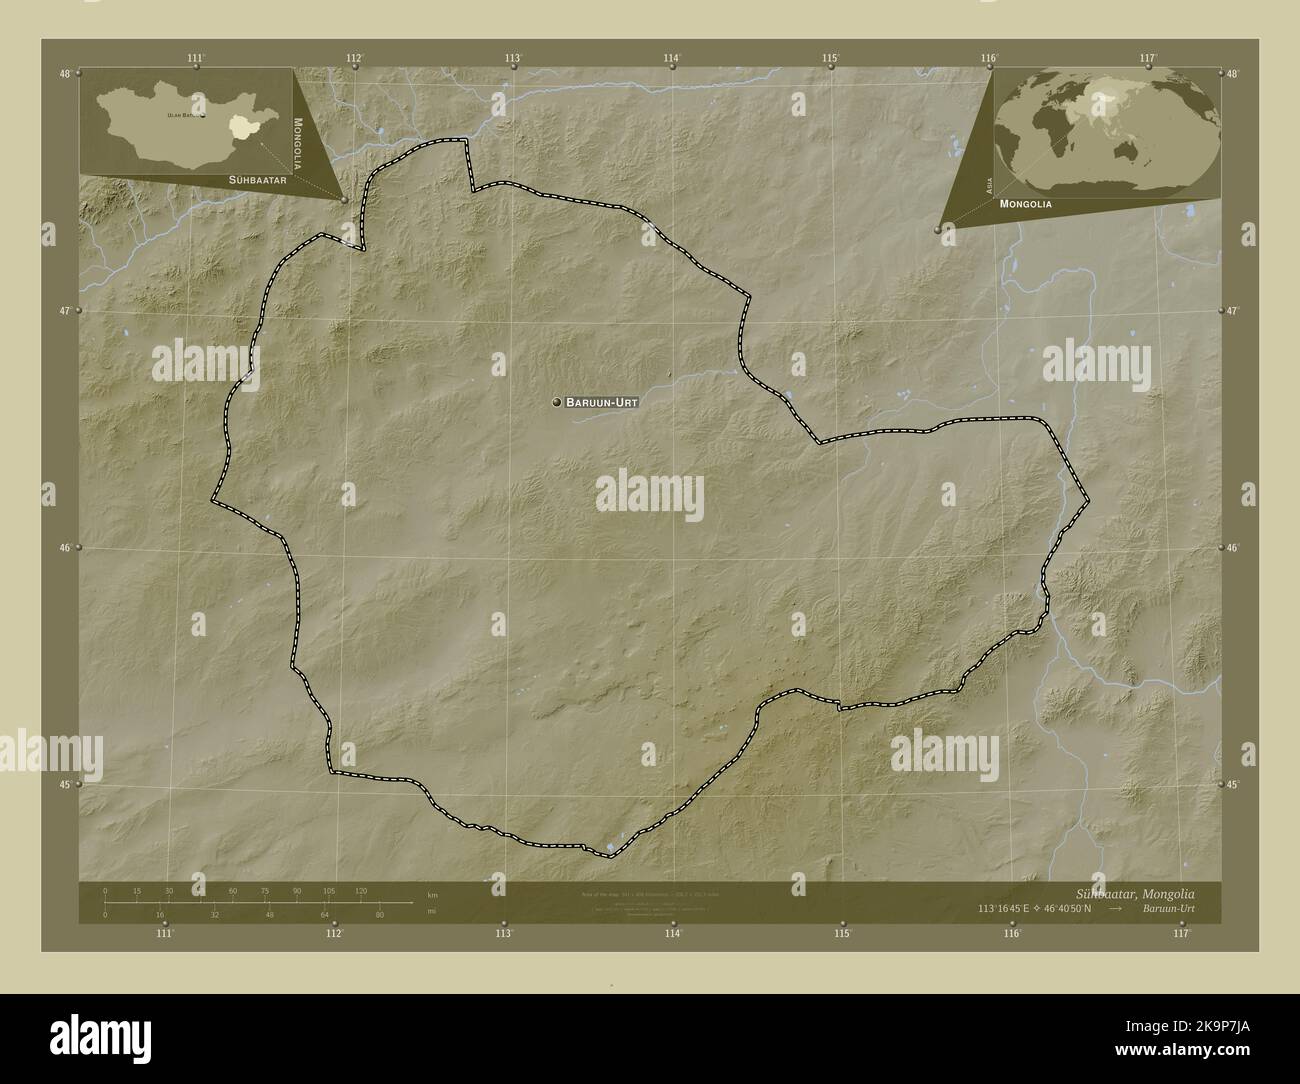 Suhbaatar, province de Mongolie. Carte d'altitude colorée en style wiki avec lacs et rivières. Lieux et noms des principales villes de la région. Coin Banque D'Images